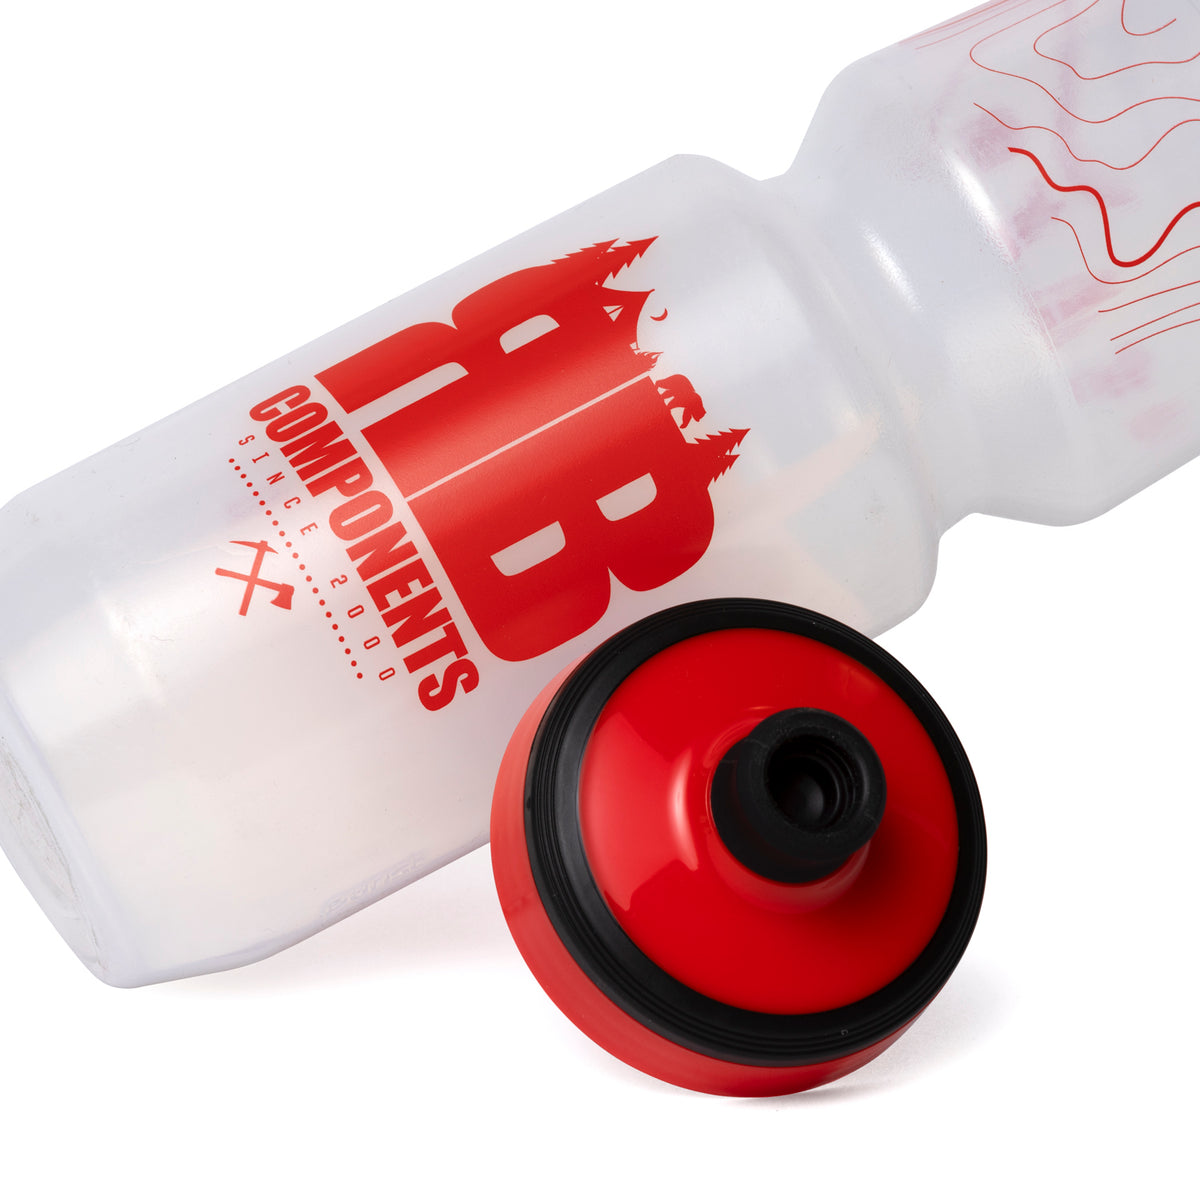 Purist Bike Sport Water Bottle - Red